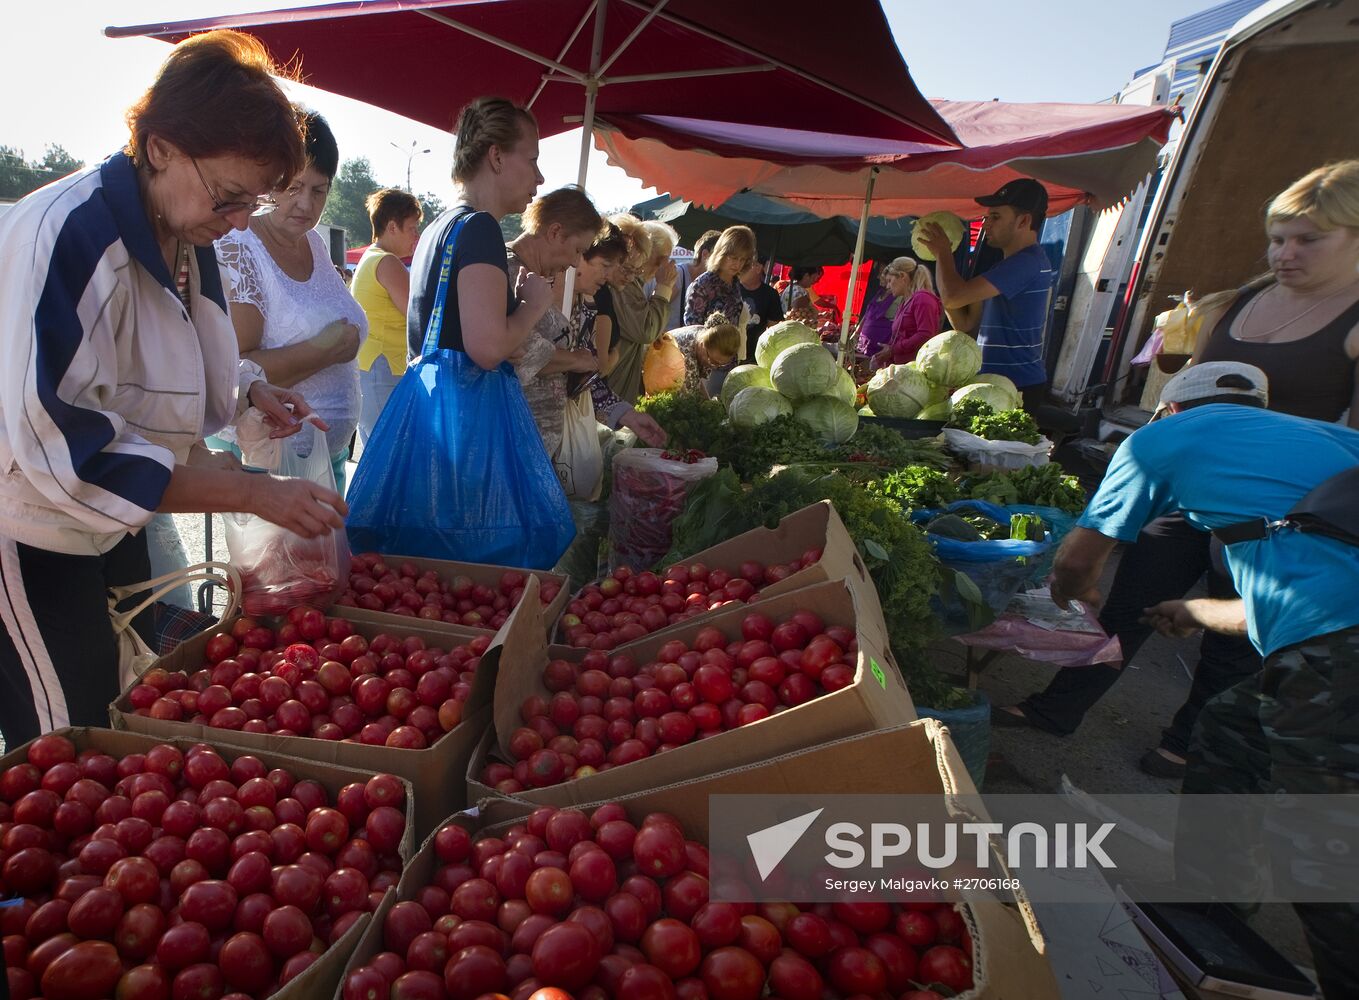 Fall agricultural fair in Simferopol